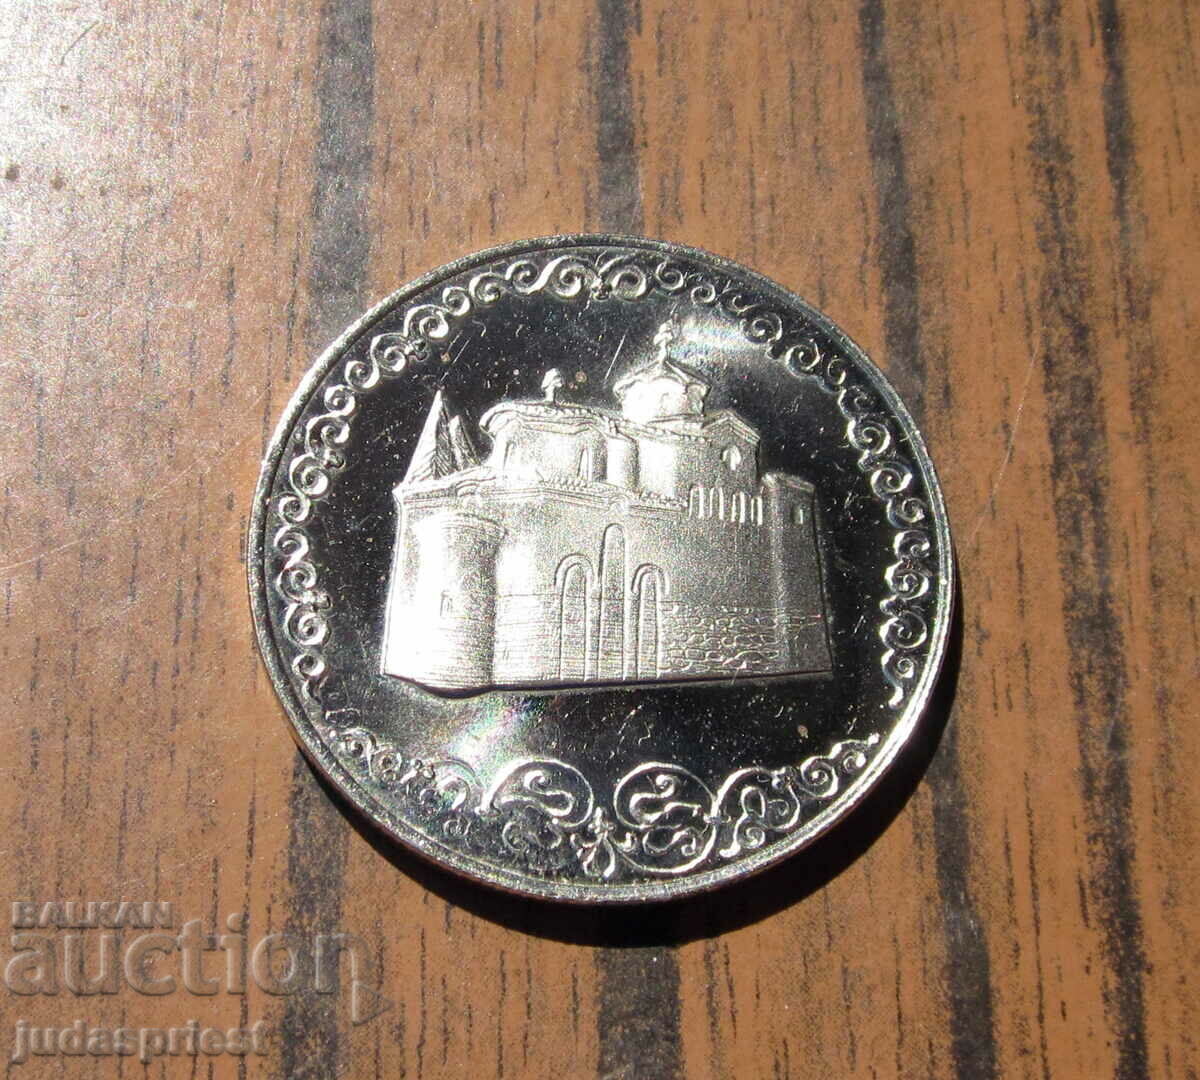 Българска юбилейна монета 2 лева 1300 години България